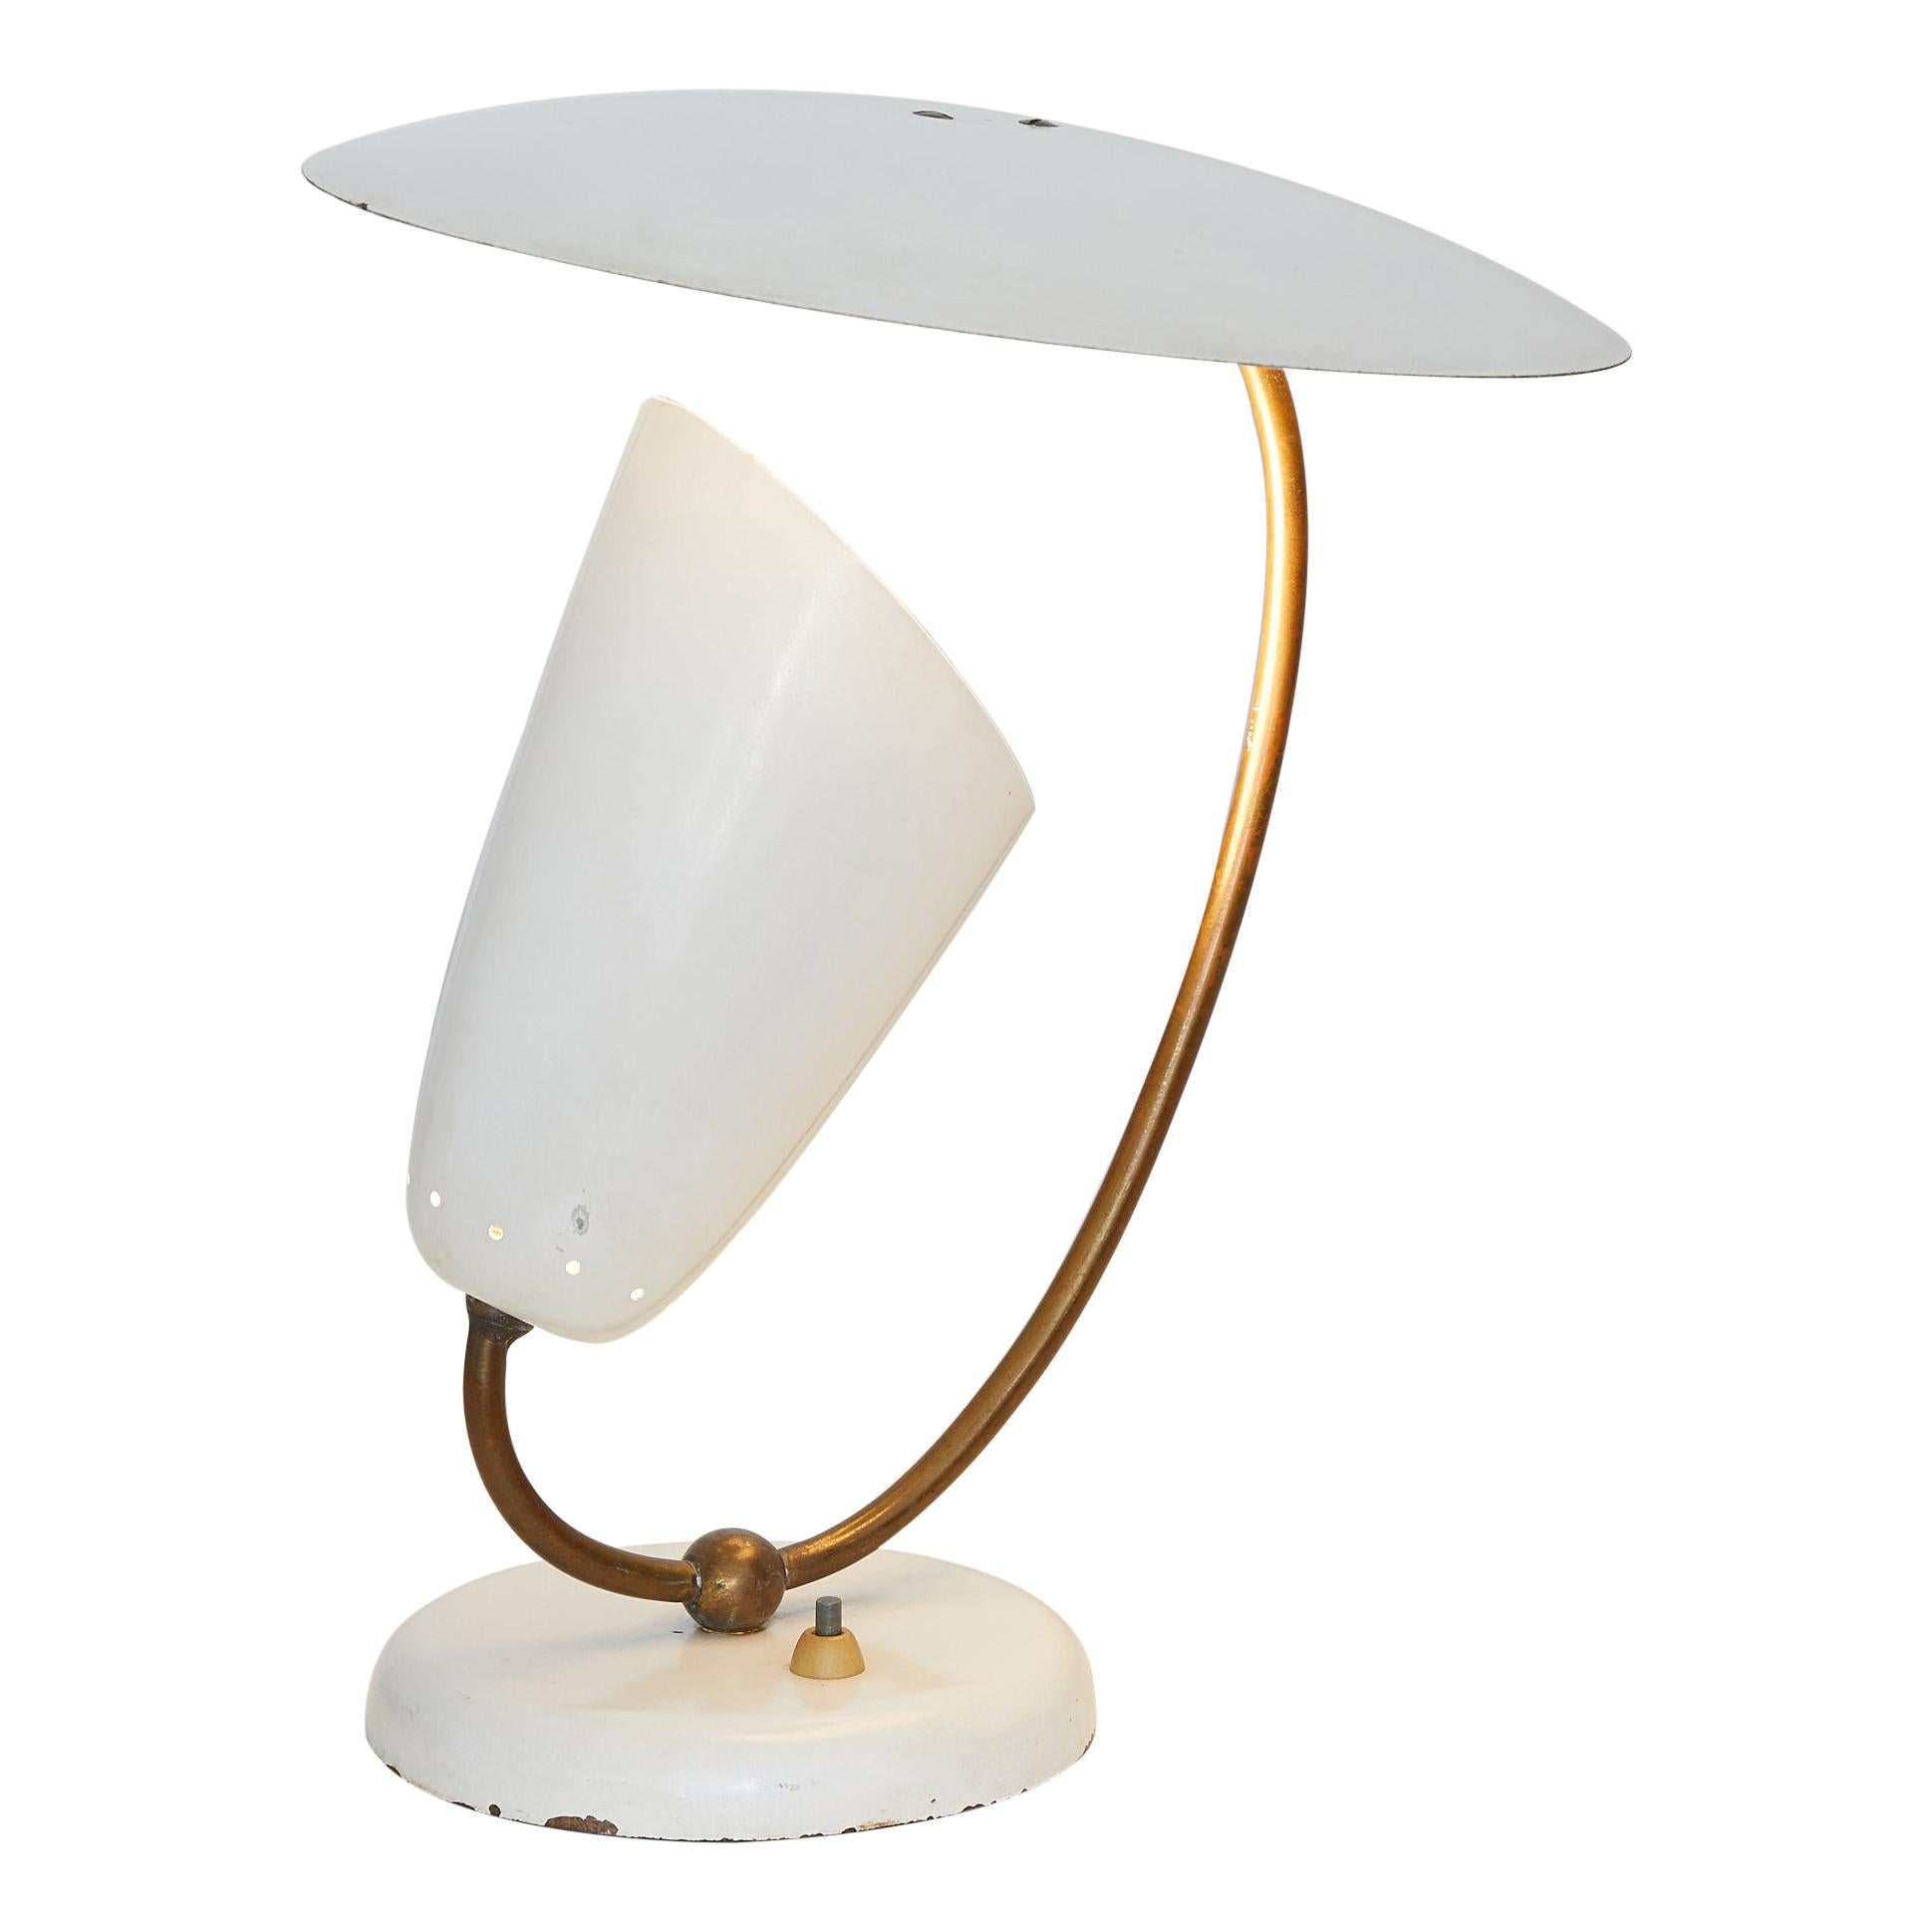 Brass and Enameled Metal Table Lamp, Stilnovo Inspired, Switzerland, 1950 For Sale